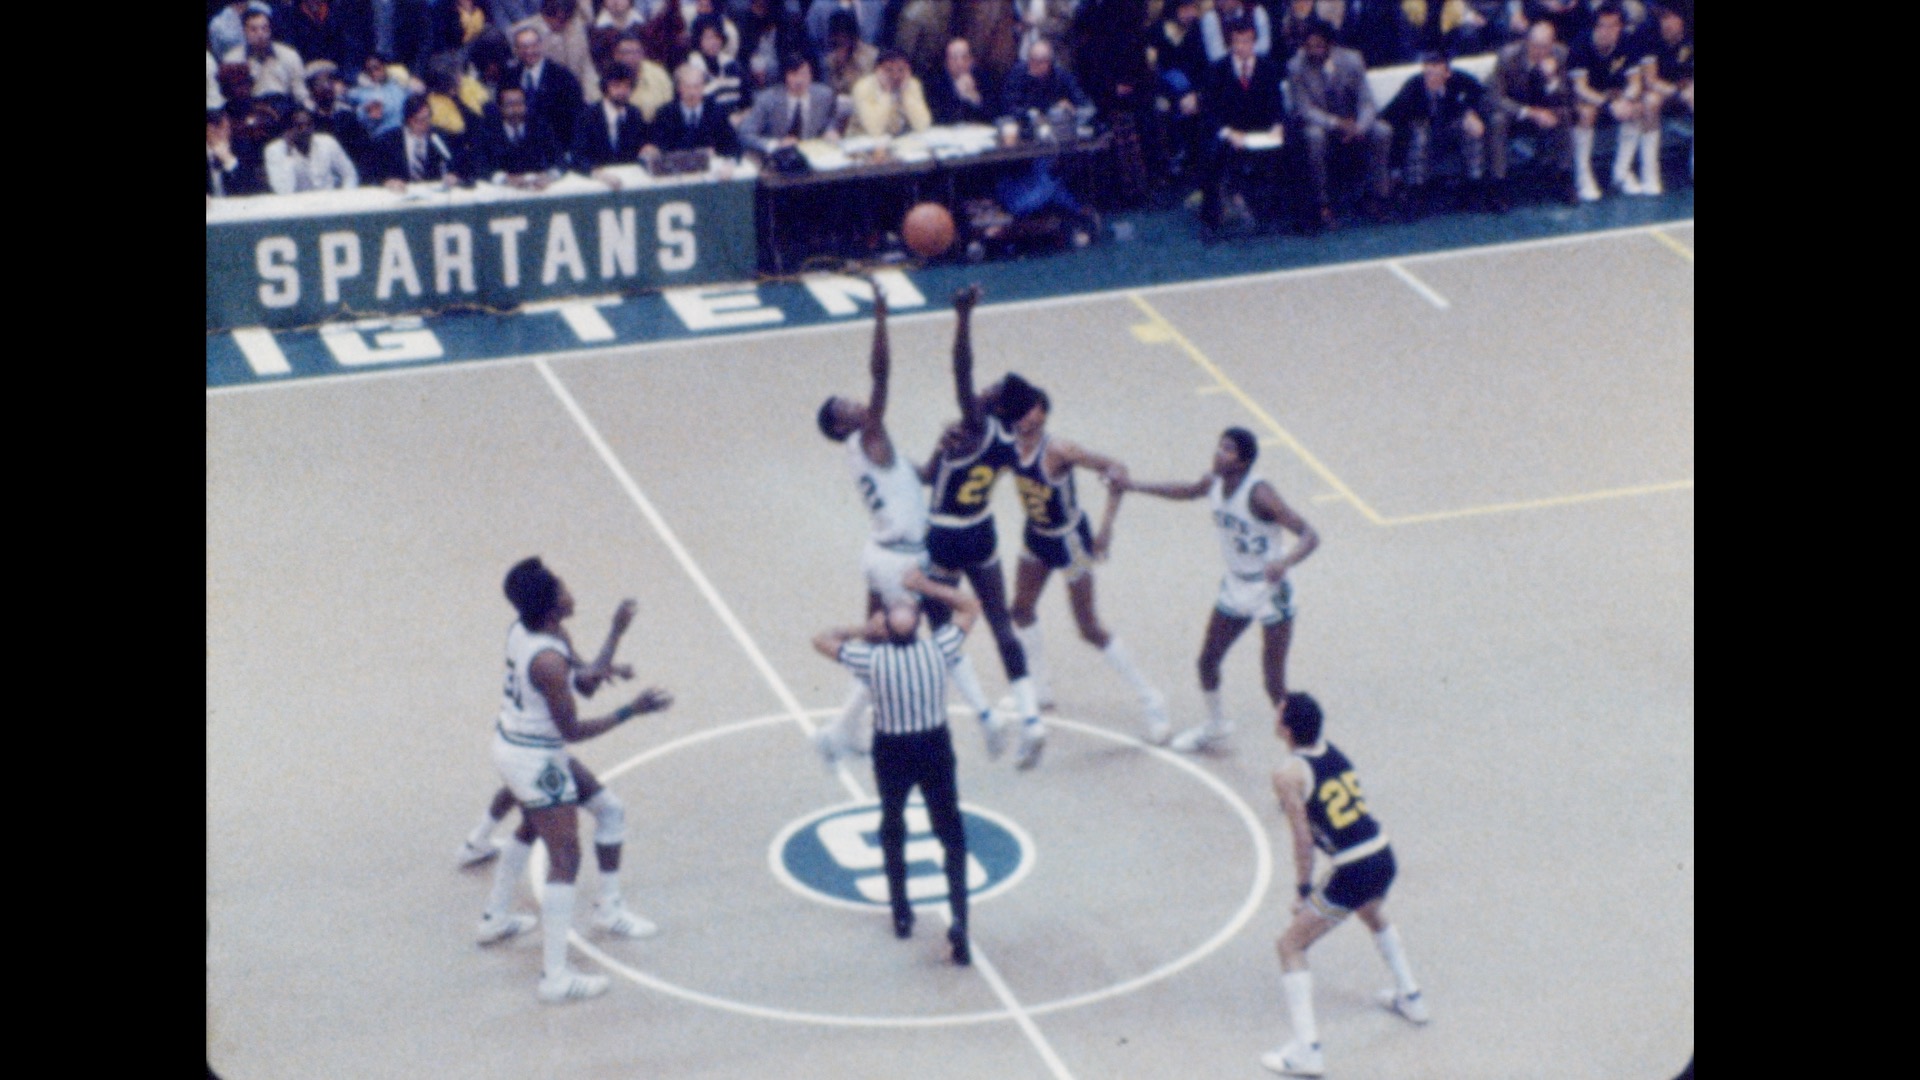 MSU Basketball vs. Michigan (home), 1978